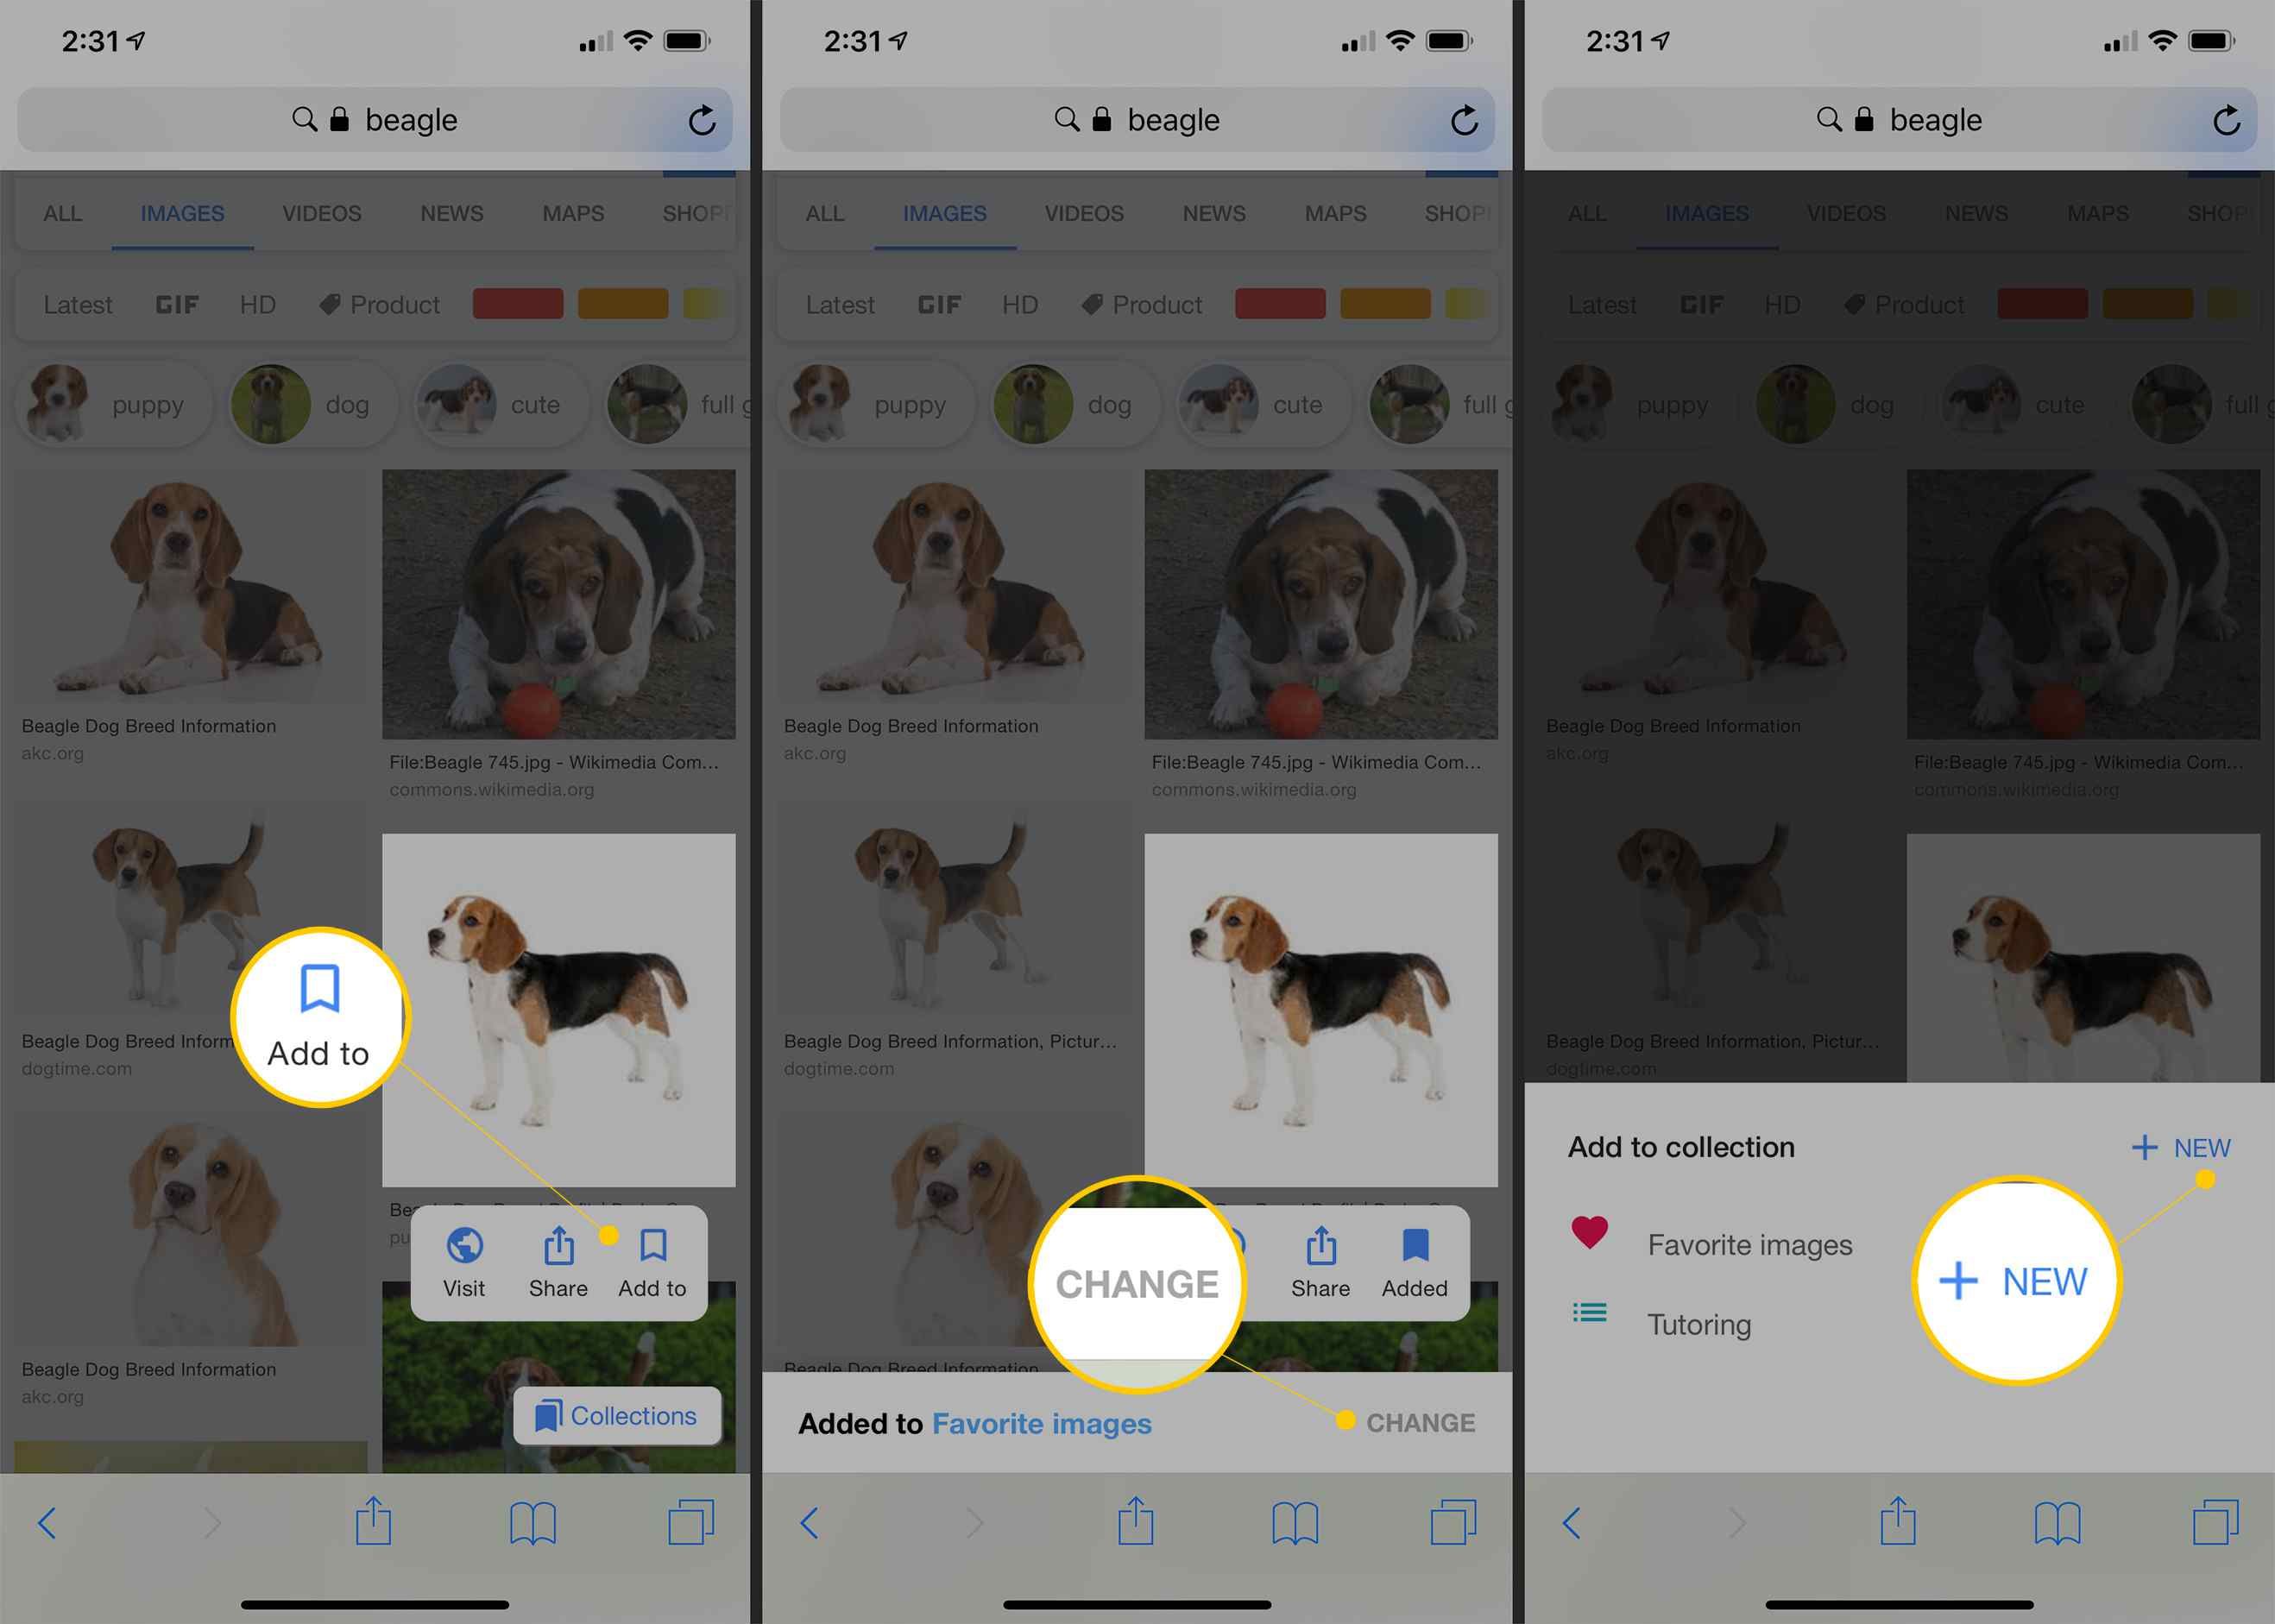 Кнопки Добавить, Изменить и + Новые в Google Изображения на iOS